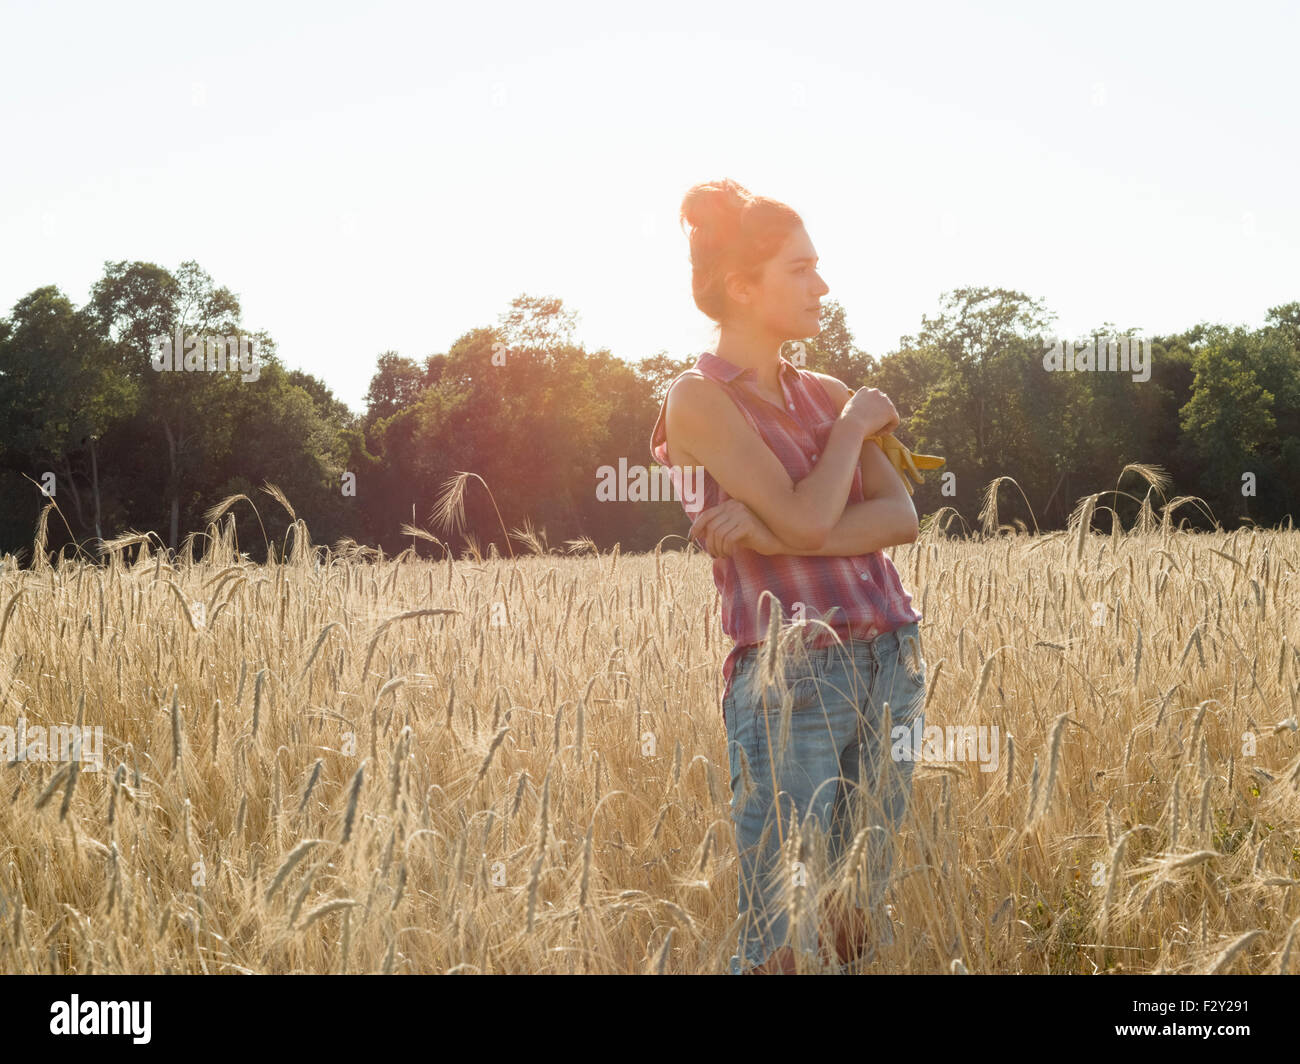 Junge Frau trägt ein kariertes Hemd steht in einem Maisfeld. Stockfoto